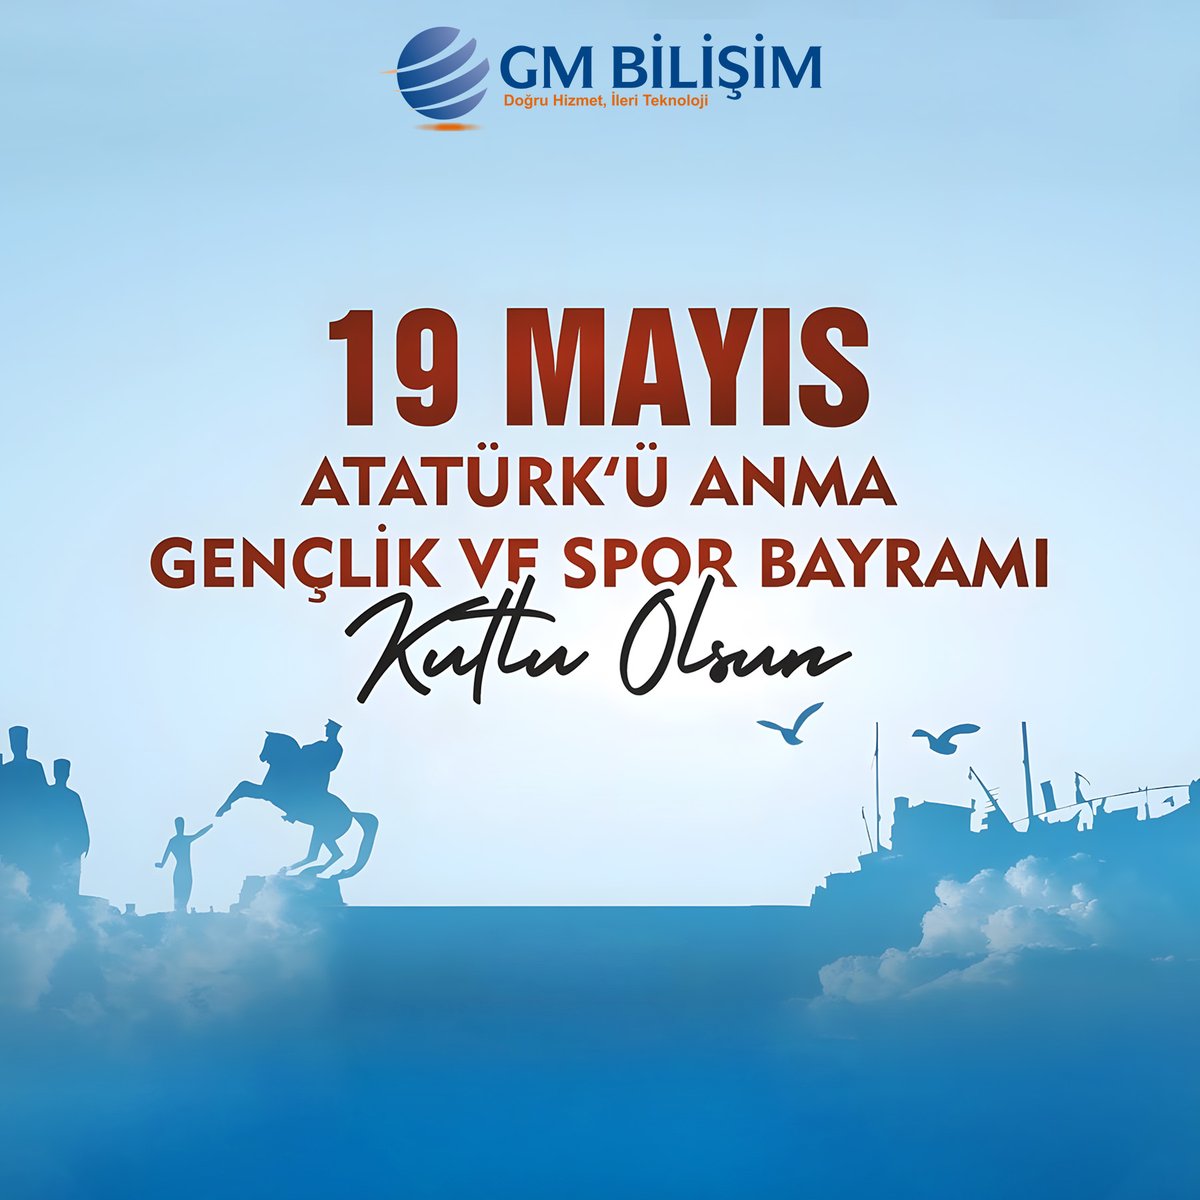 Gazi Mustafa Kemal Atatürk başta olmak üzere, tüm şehitlerimizi ve gazilerimizi minnet ve şükranla anıyor, 19 Mayıs Atatürk’ü Anma, Gençlik ve Spor Bayramı’mızı büyük bir gururla kutluyoruz... #19Mayıs #Atatürk